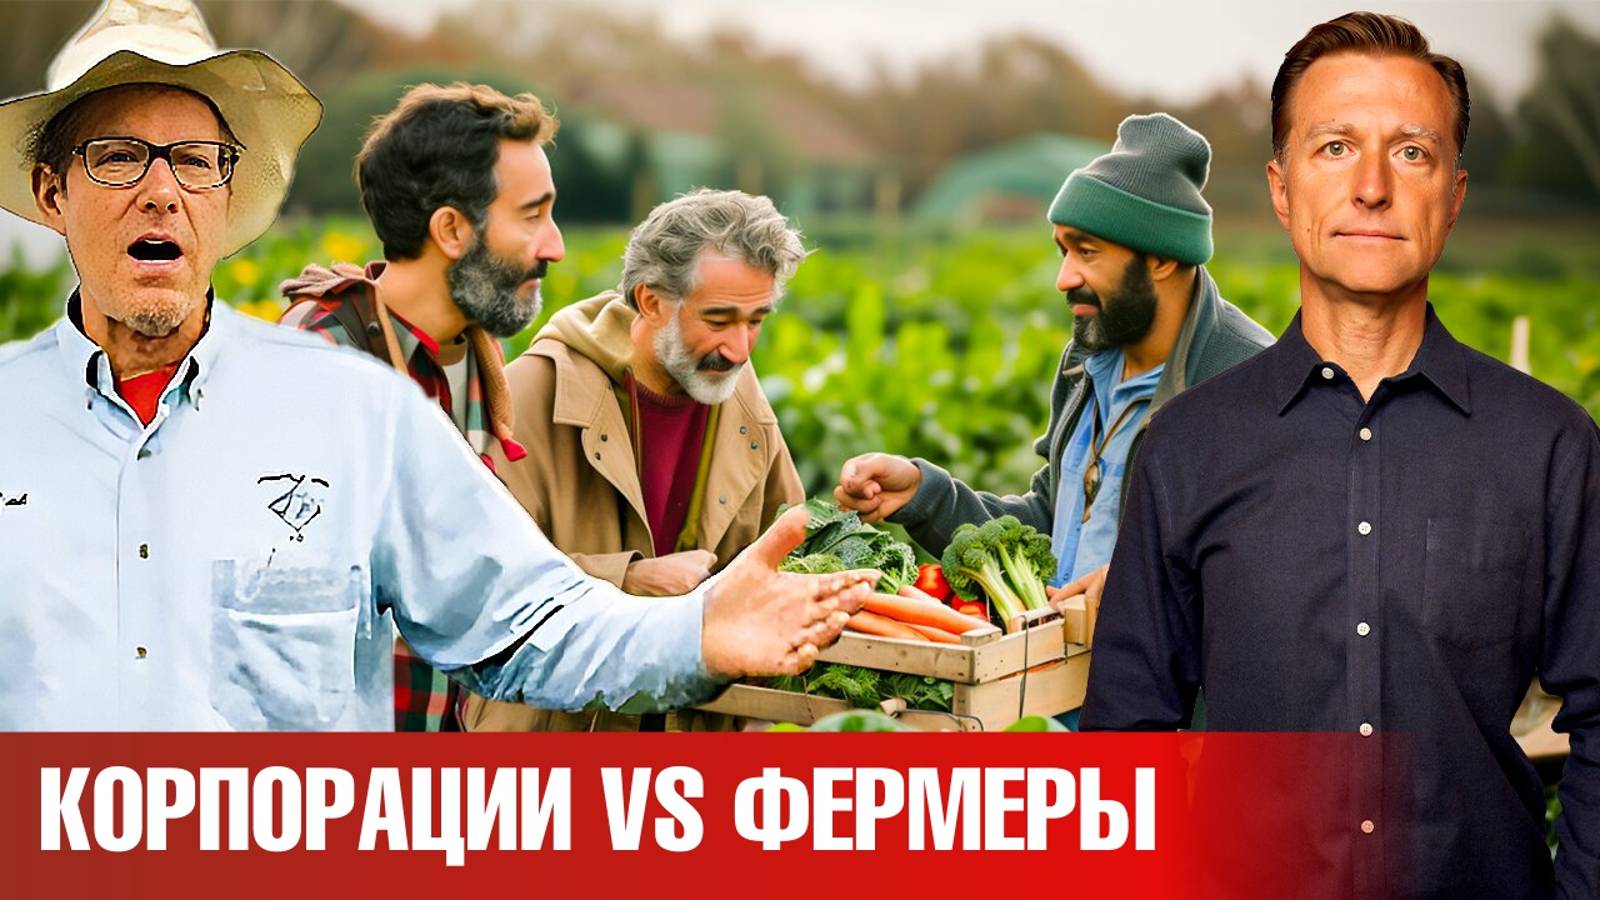 Битва фермеров за существование на рынке продуктов питания.😲